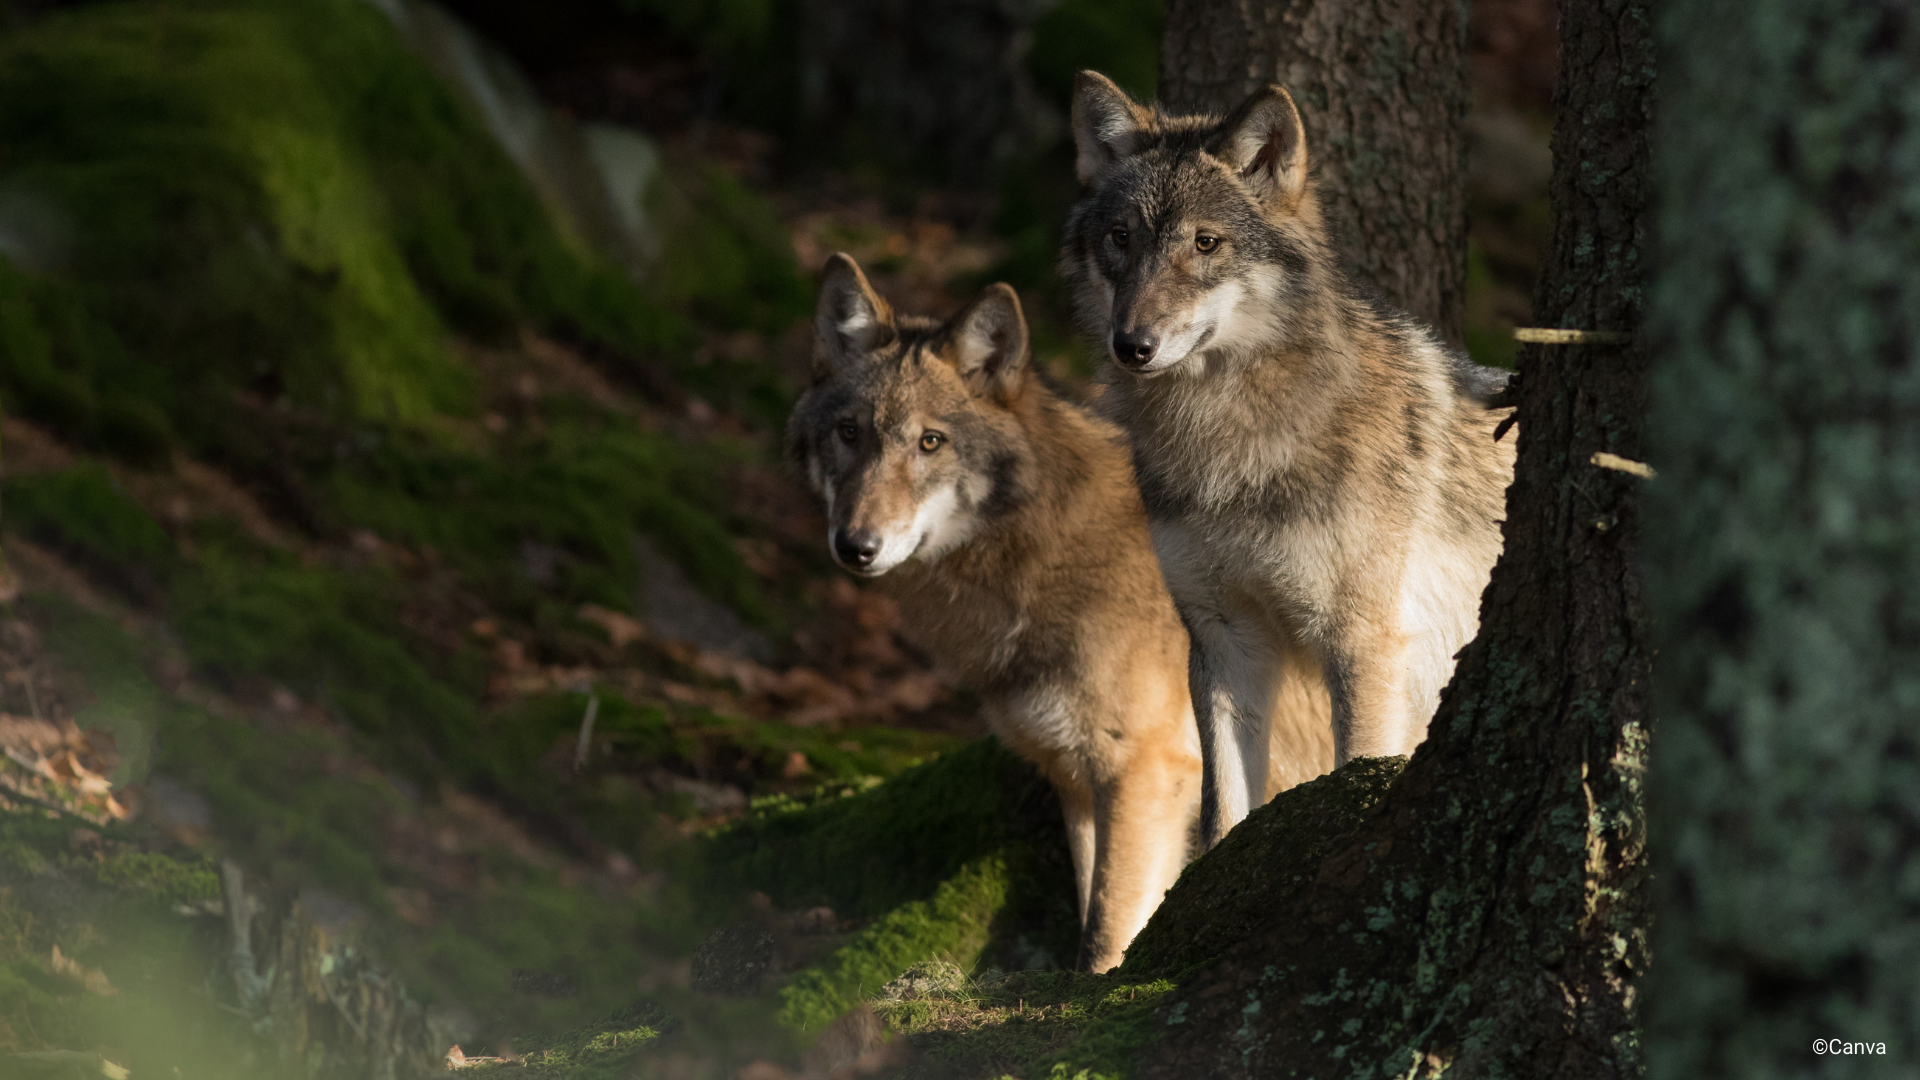 Ulven er en av artene som er kritisk truet i Norge. Kategorien kommer av svært liten populasjonsstørrelse eller svært begrenset areal. Foto: Canva